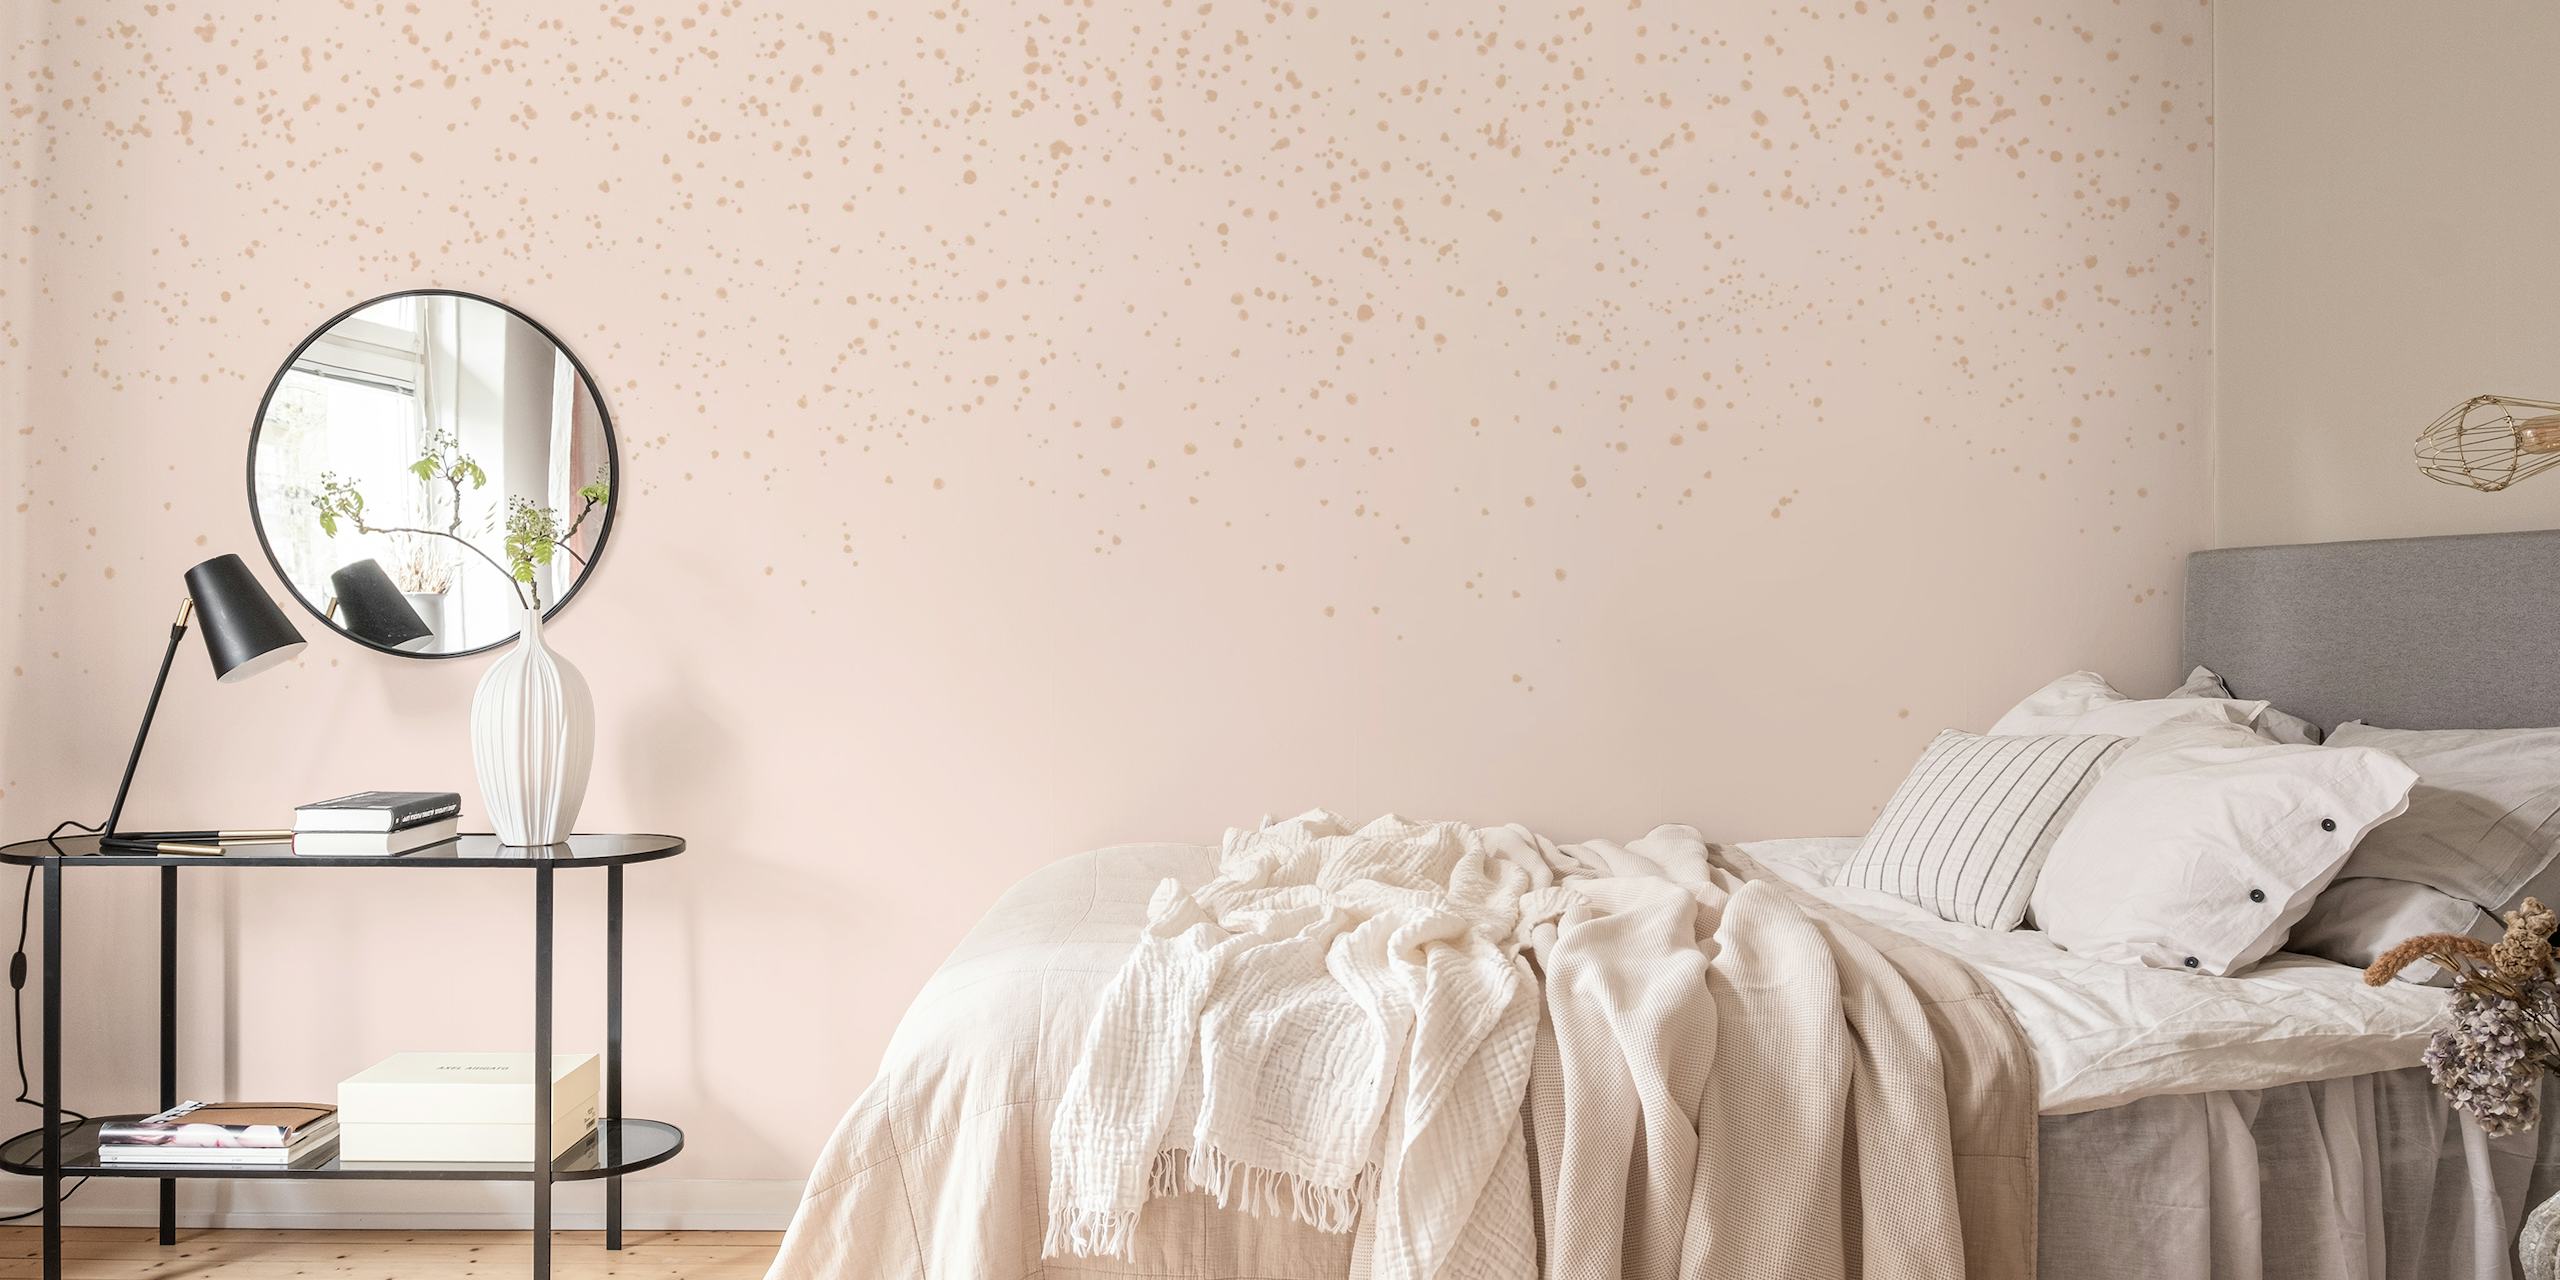 Une fresque murale en rideau rose, beige et doré à la texture douce.